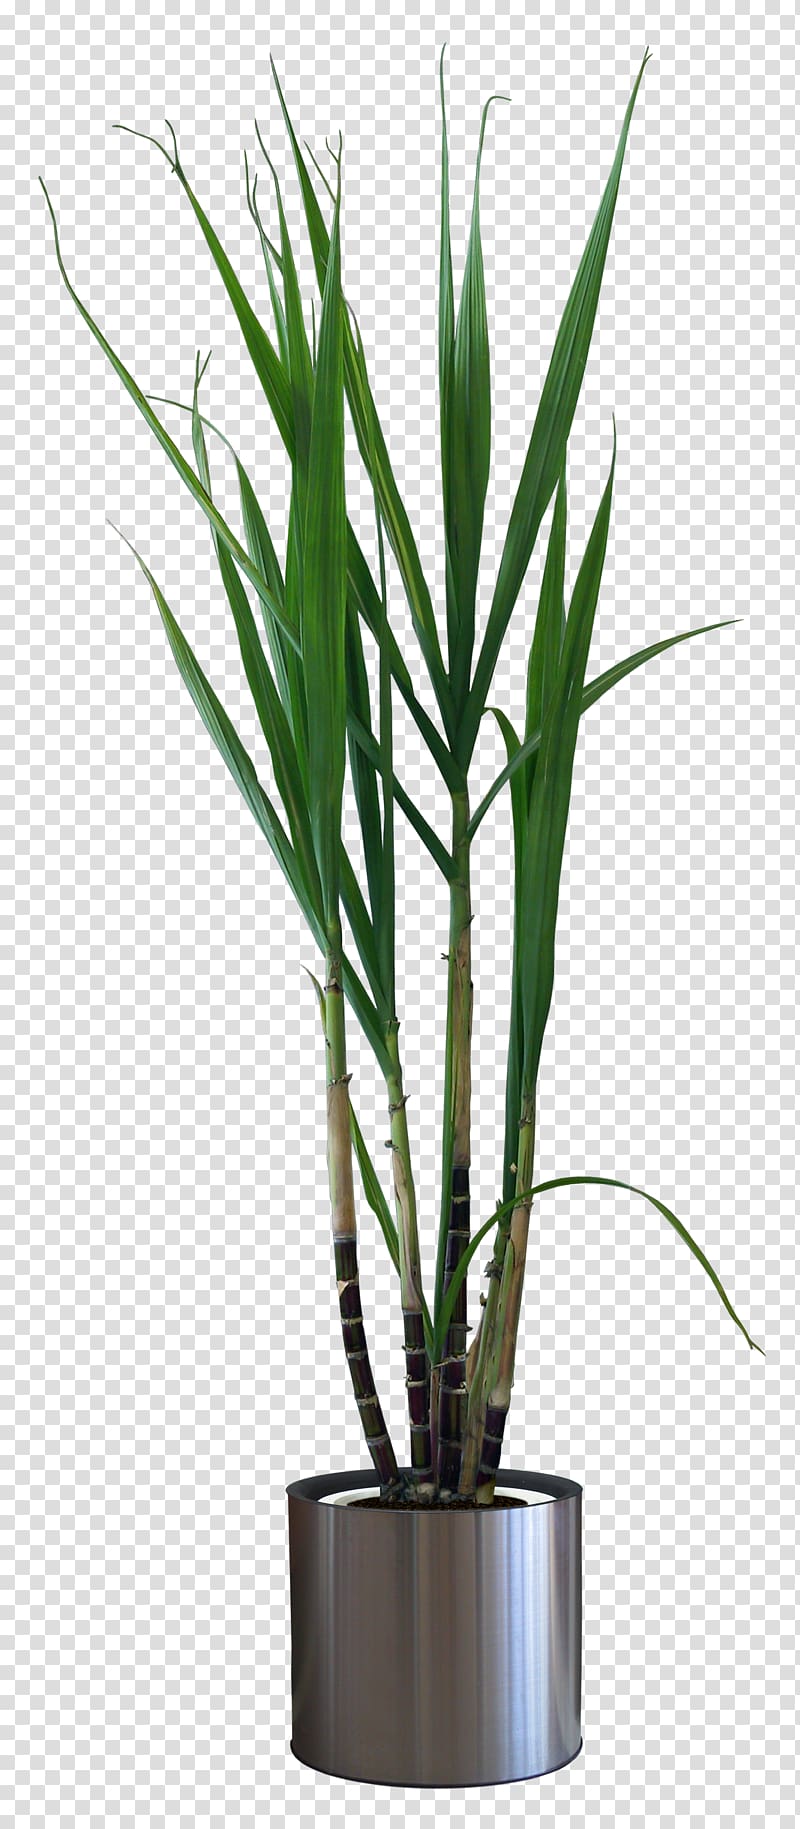 Houseplant Flowerpot Pixel, sugar cane transparent background PNG clipart